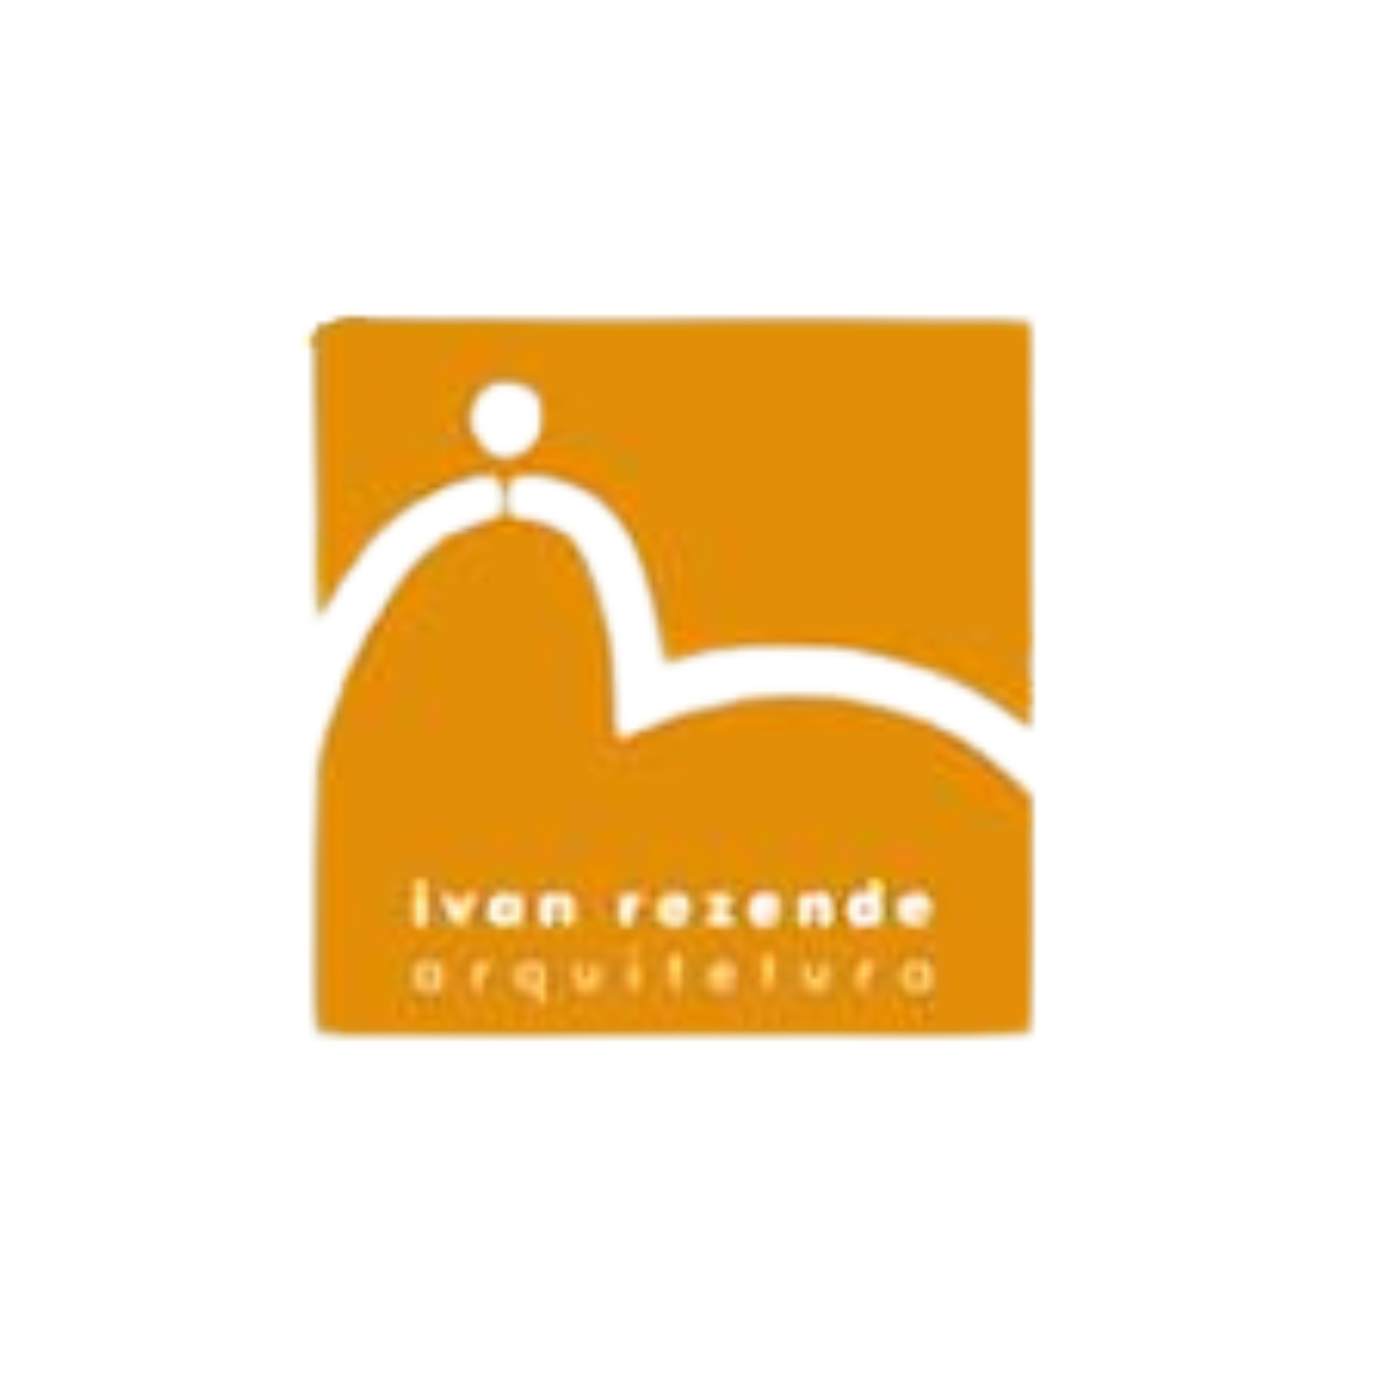 Ivan Rezende